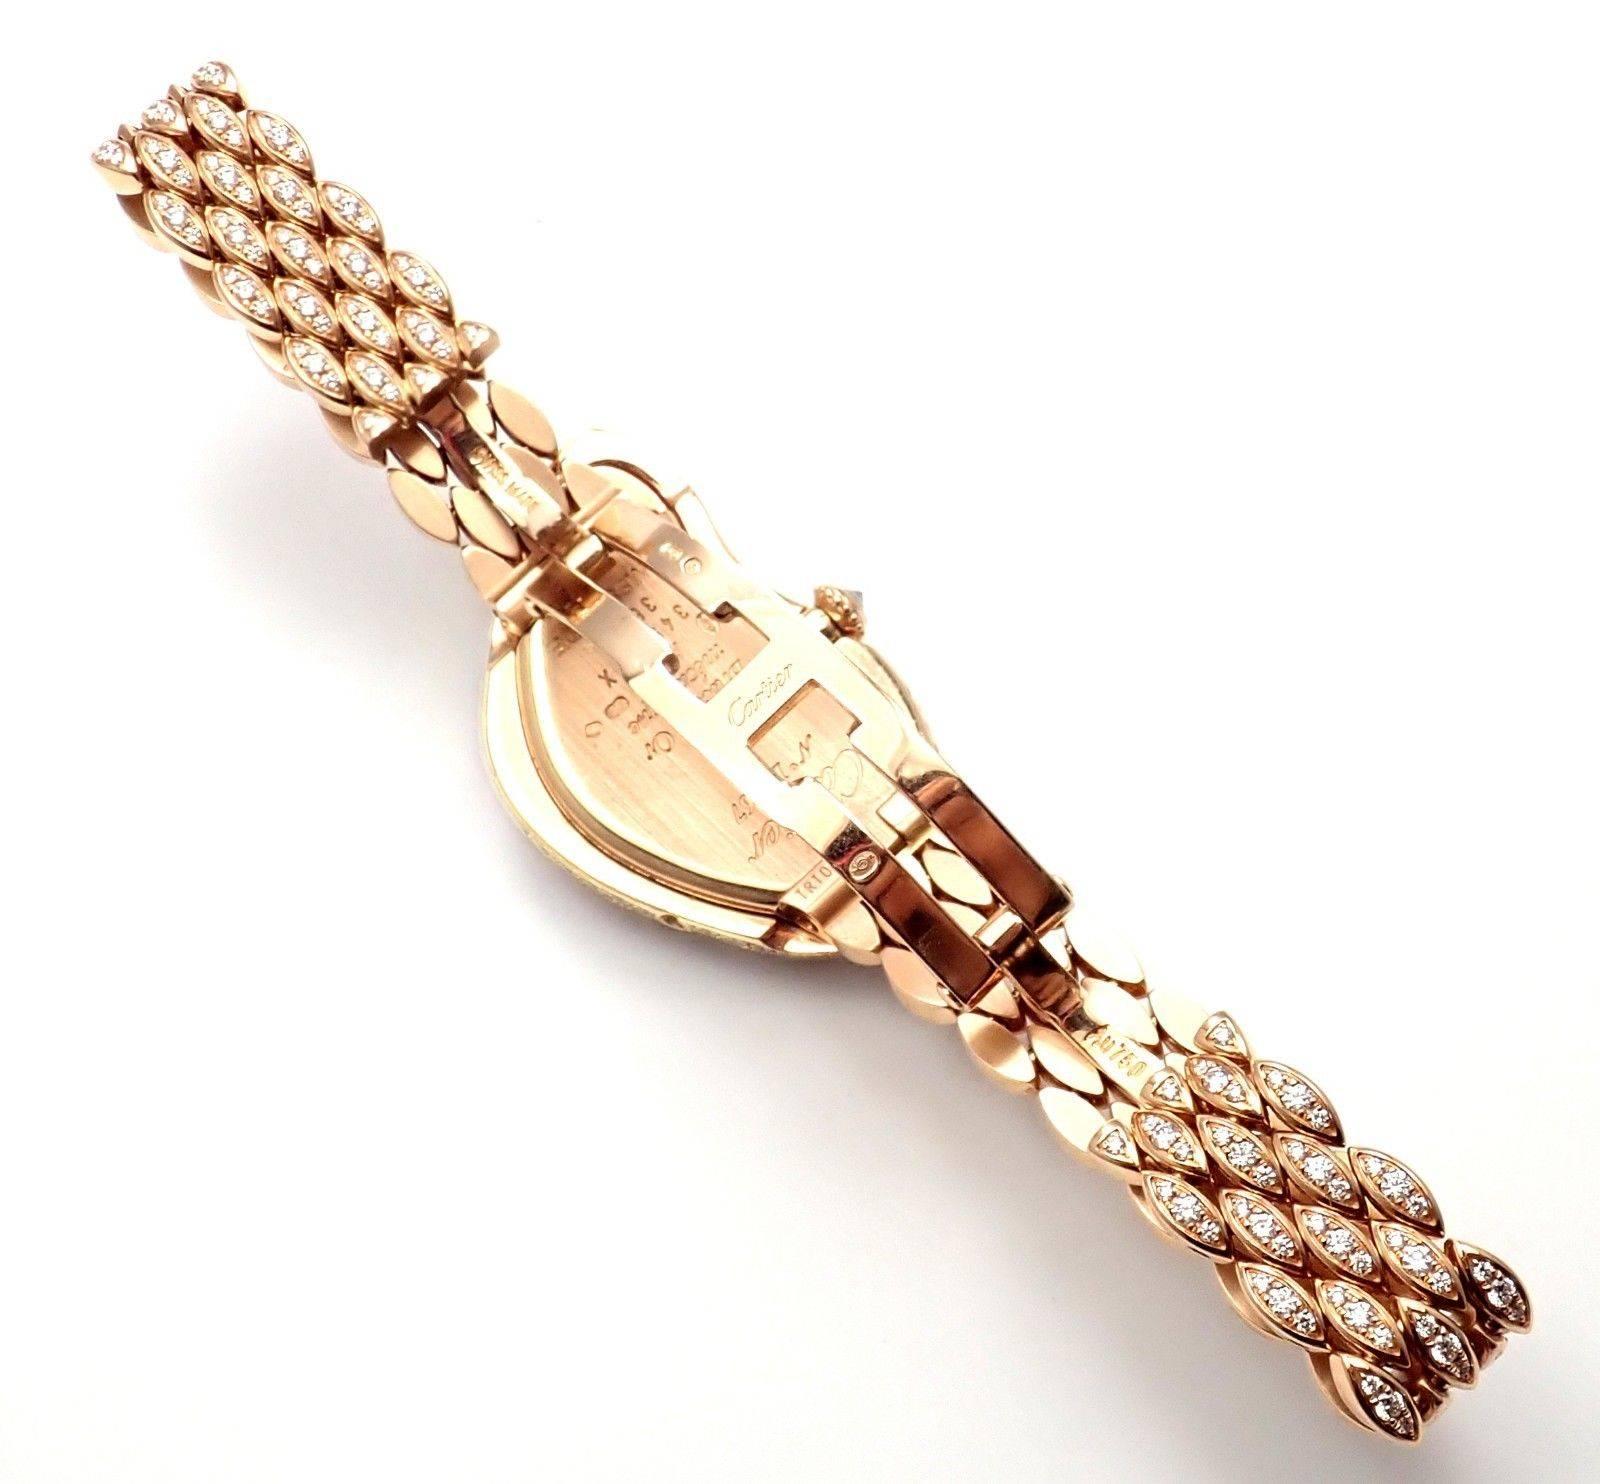  Montre-bracelet Crash Cartier en or rose et diamants édition limitée Ref HP100653 Unisexe 